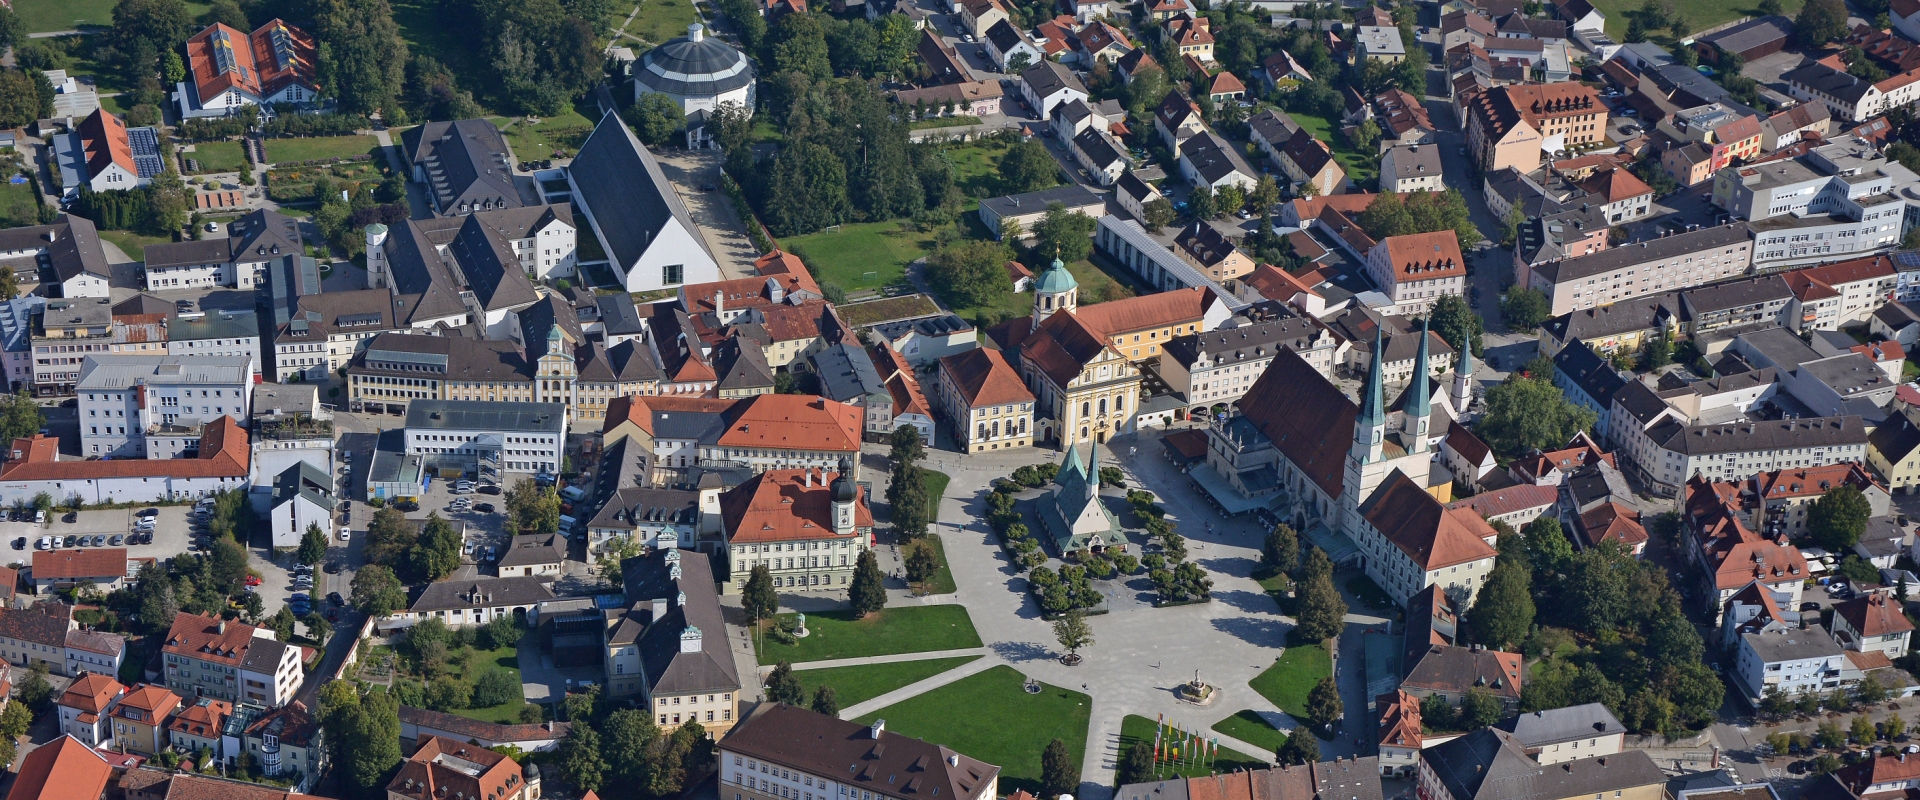 Hier sehen Sie eine Luftbildaufnahme der Stadt Altötting.